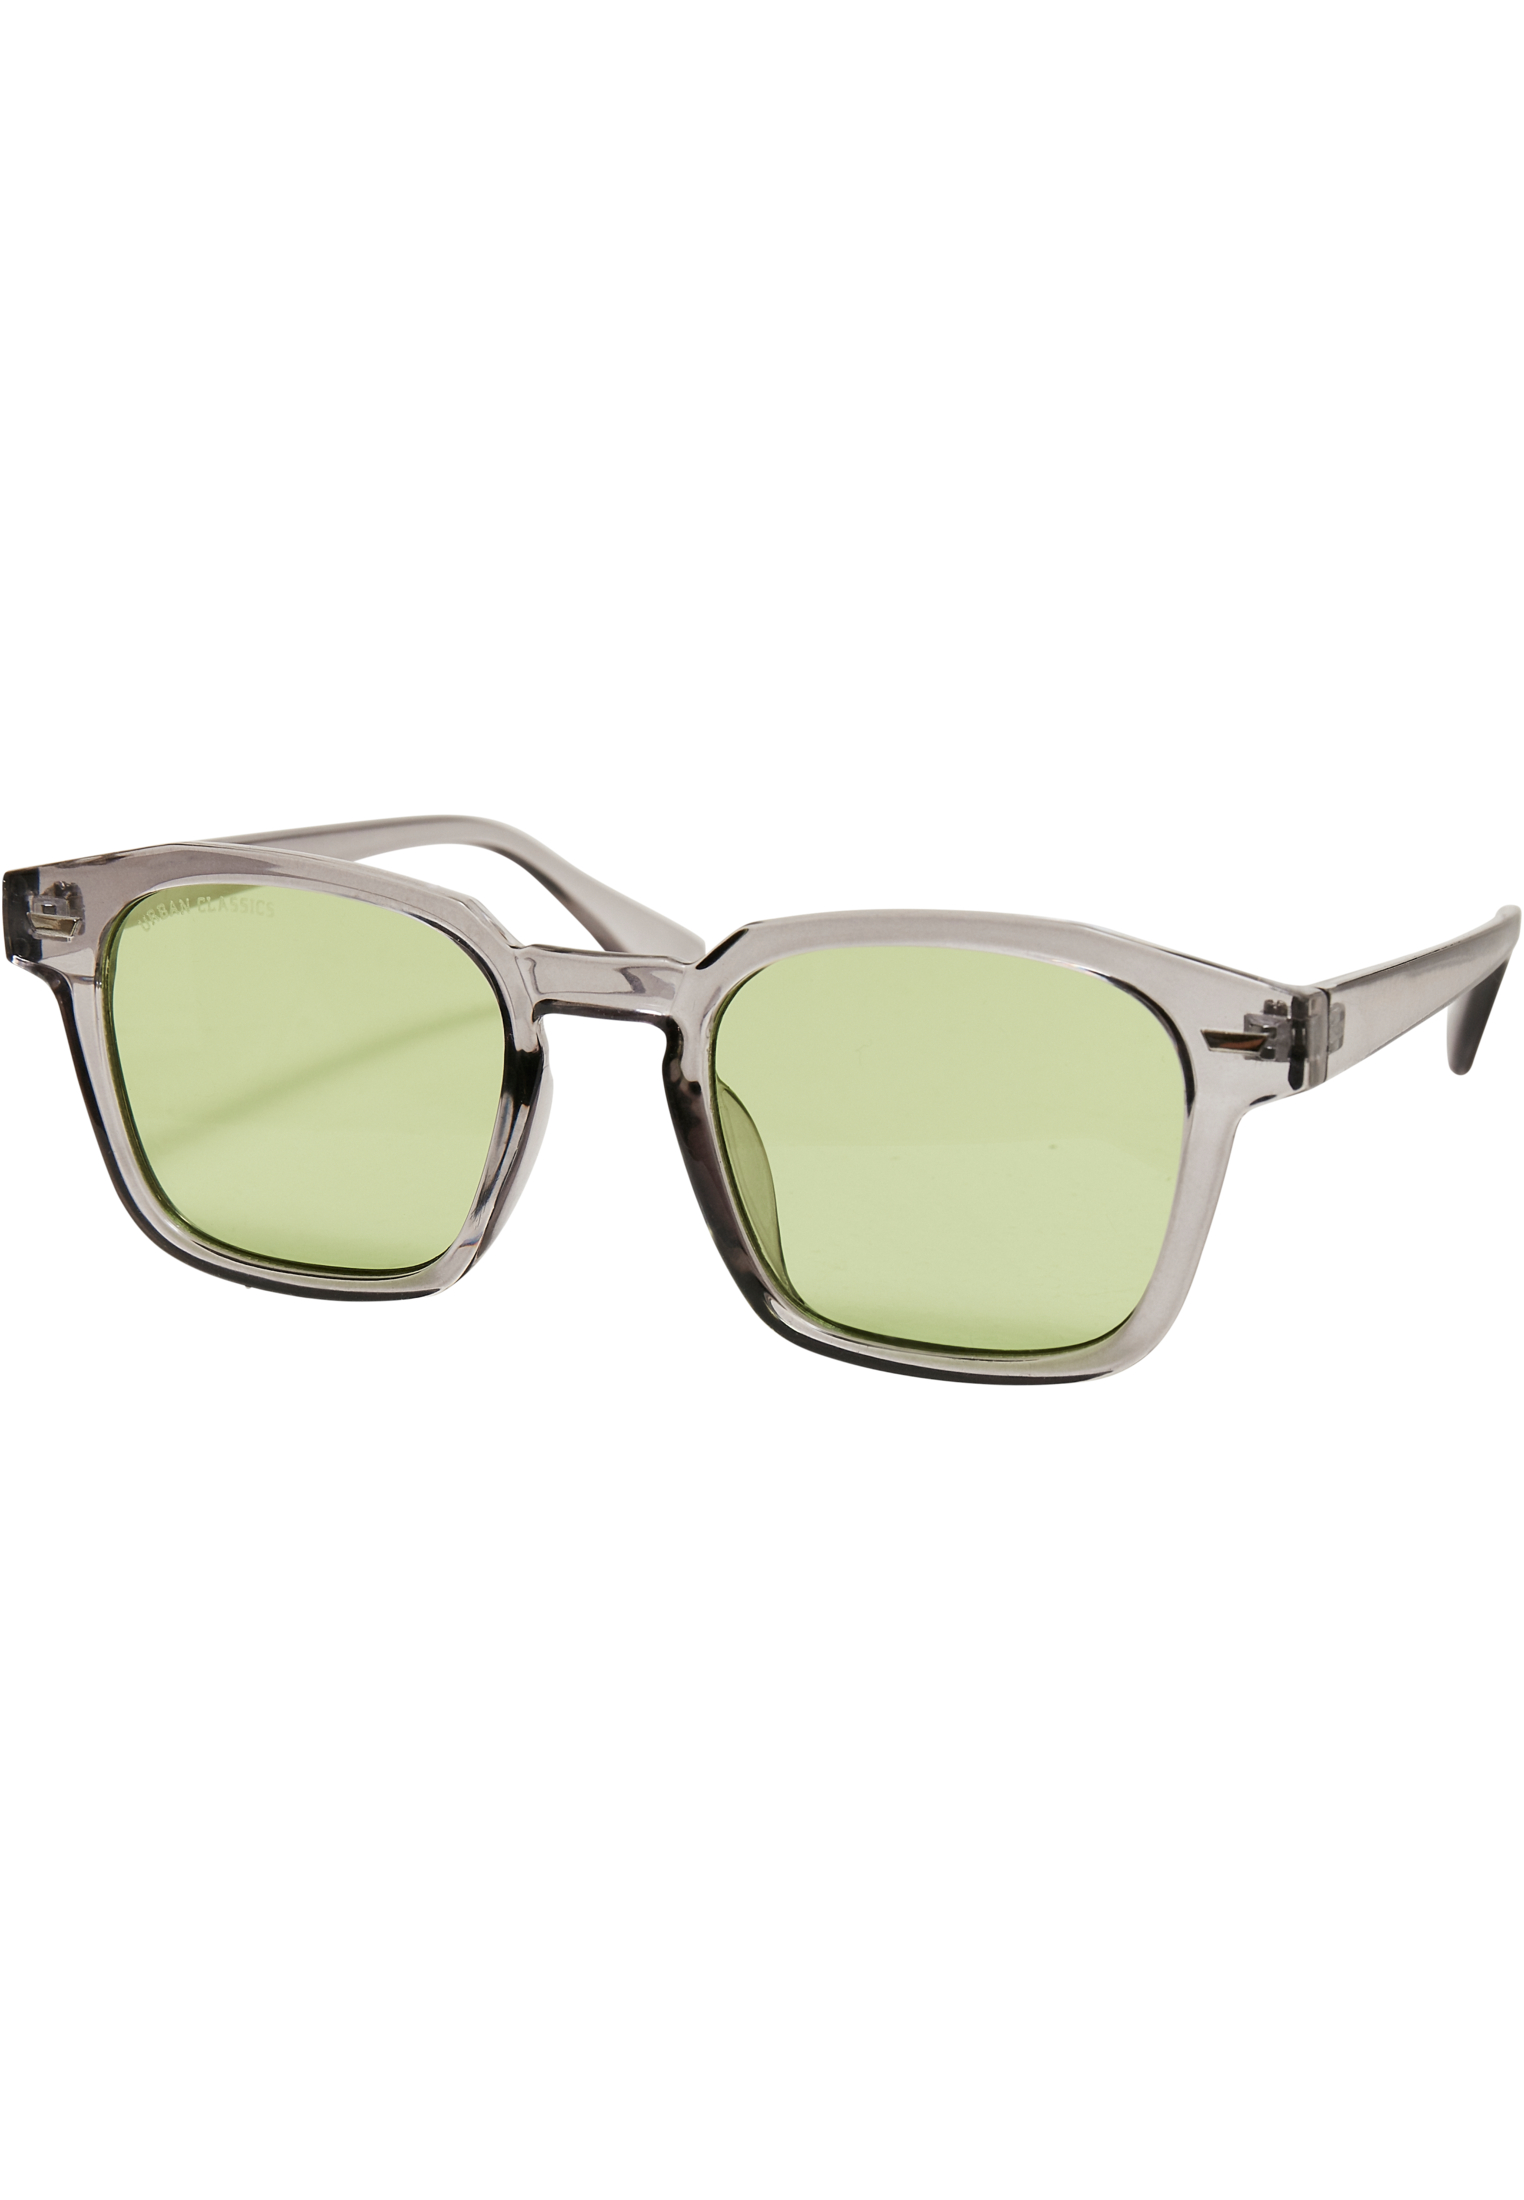 Case-TB5210 Sunglasses Maui With